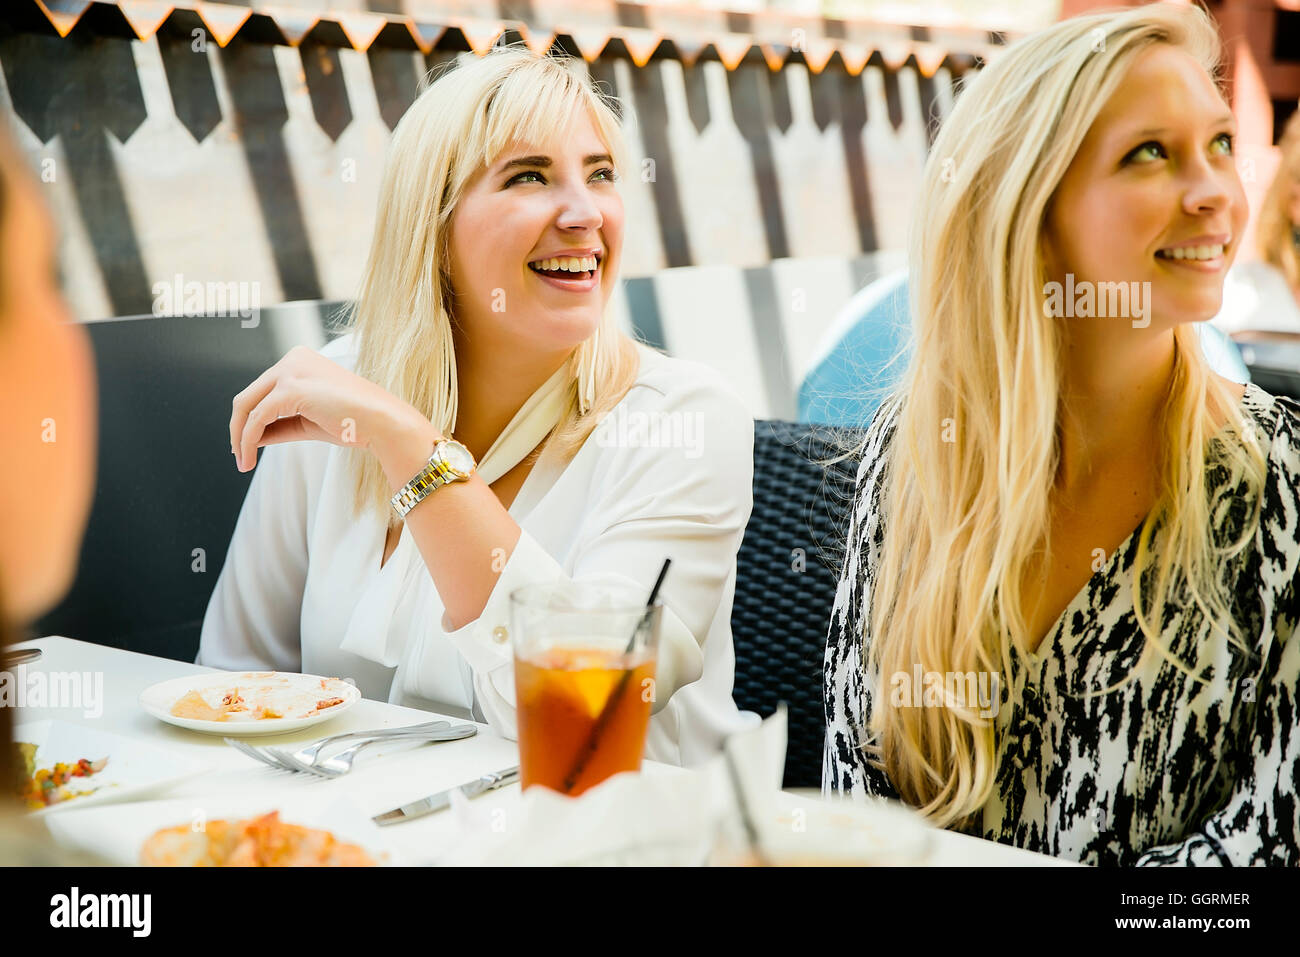 Les clients caucasiens smiling in restaurant Banque D'Images